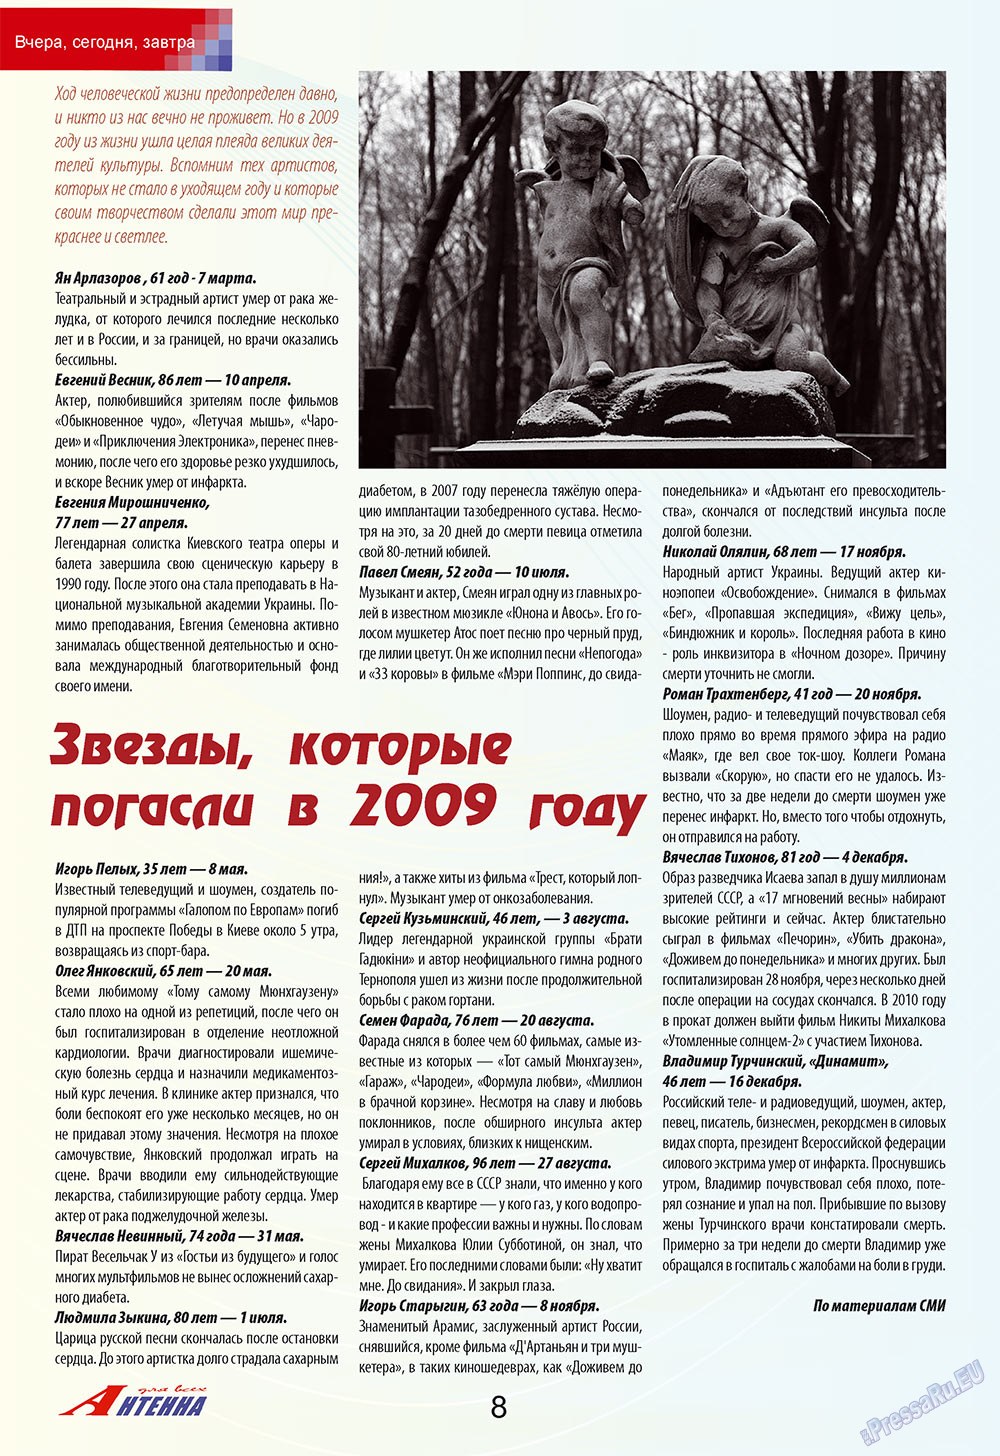 Антенна, журнал. 2010 №1 стр.8